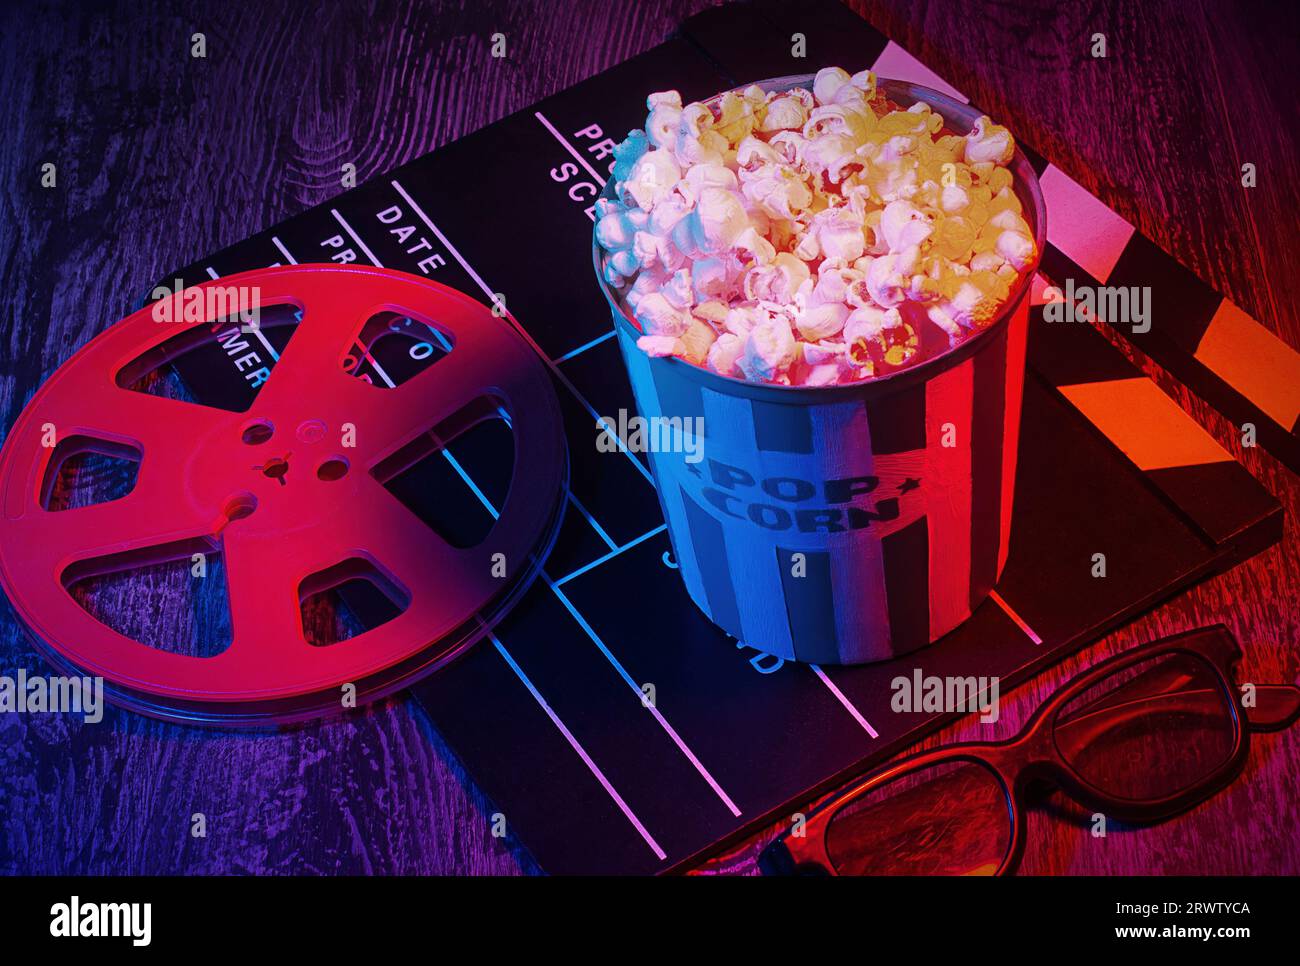 Fond de concept de films de cinéma, avec un seau de maïs pop, lunettes 3D. Modèle de soirée cinéma, photo commerciale de dessus de table, avec un violet rétro Banque D'Images